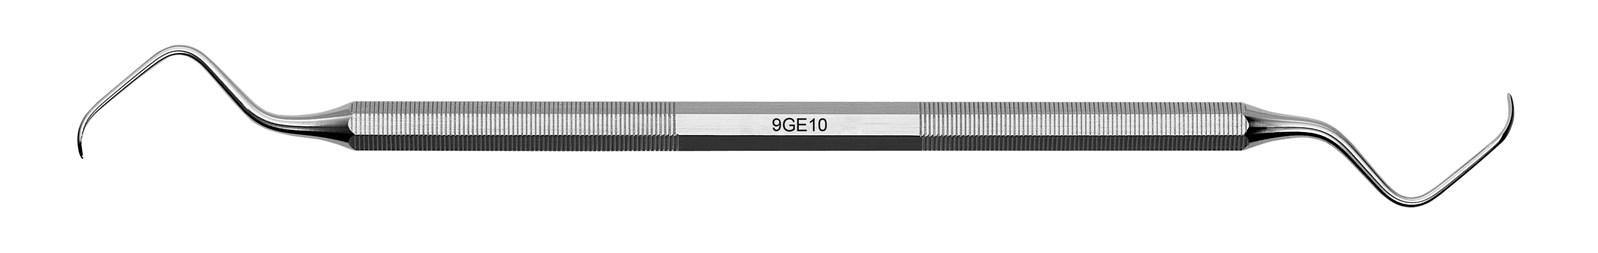 Kyreta Gracey Classic - 9GE10, ADEP silikonový návlek šedý